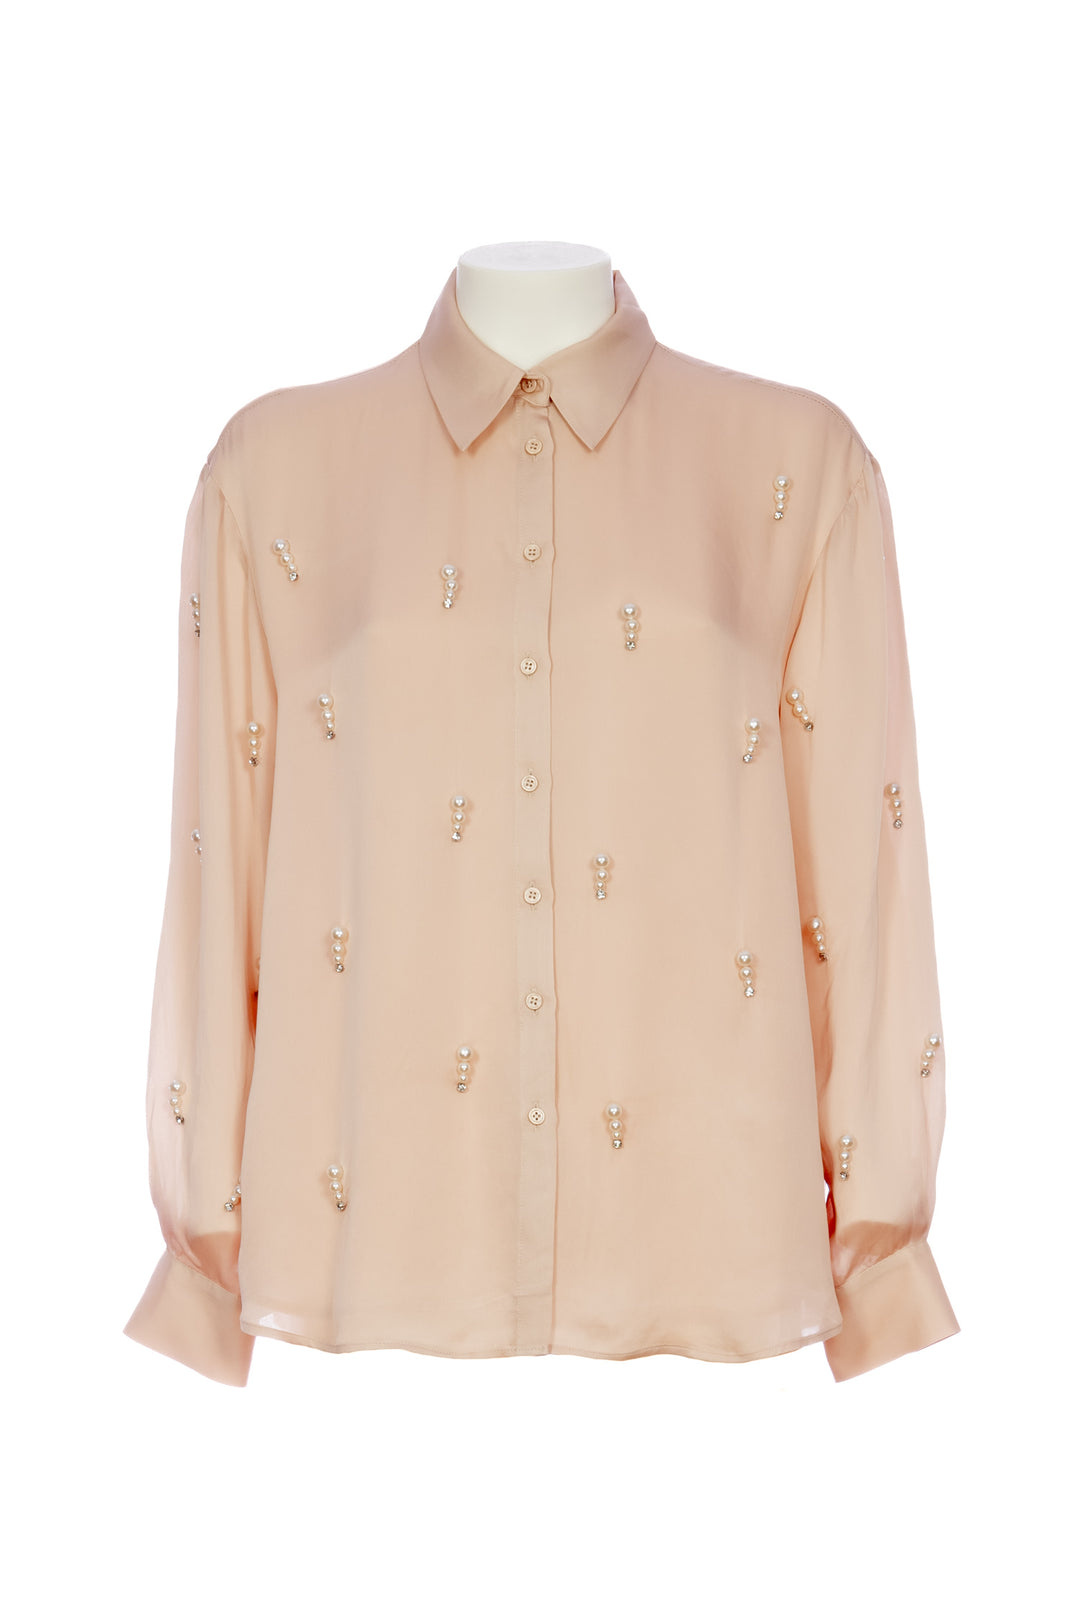 KAOS Camicia rosa antico in raso di viscosa con ricamo perle - Mancinelli 1954